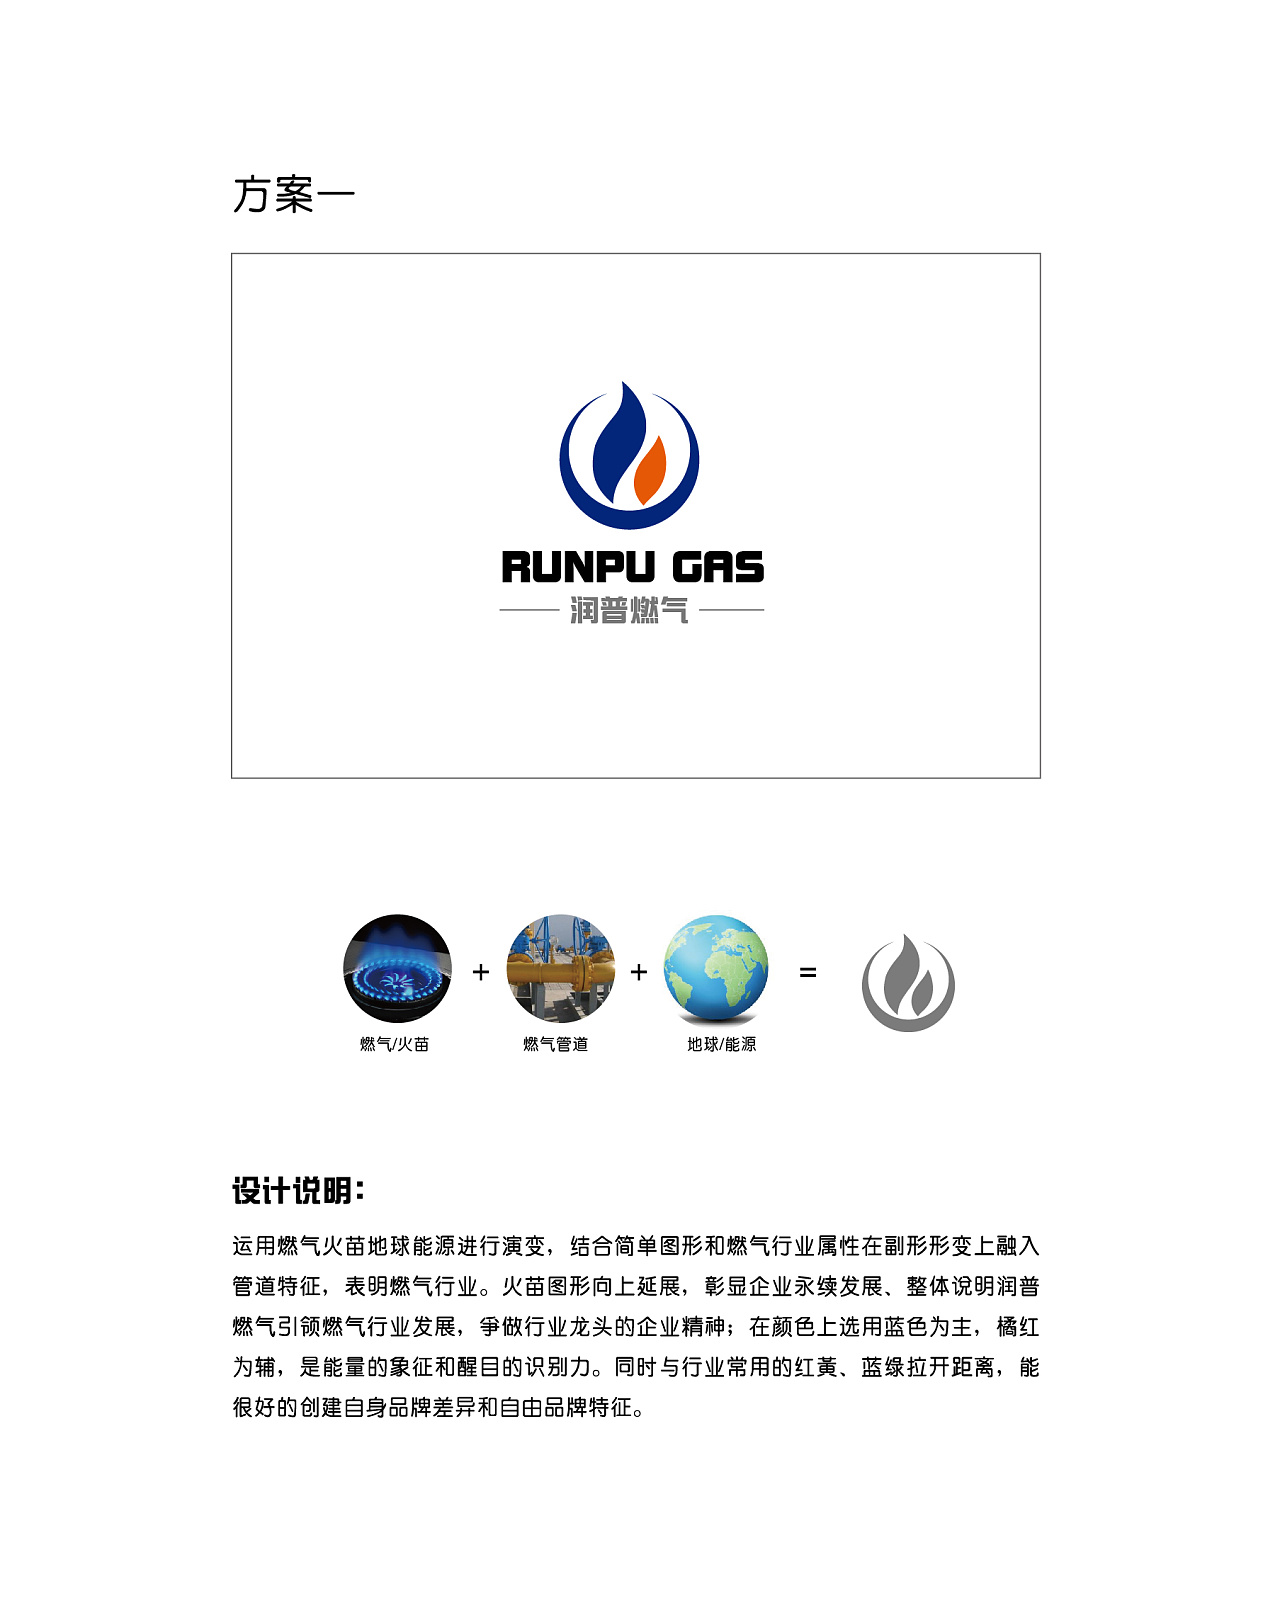 燃气logo 工业标志设计 企业logo 蓝色标志 能源标志